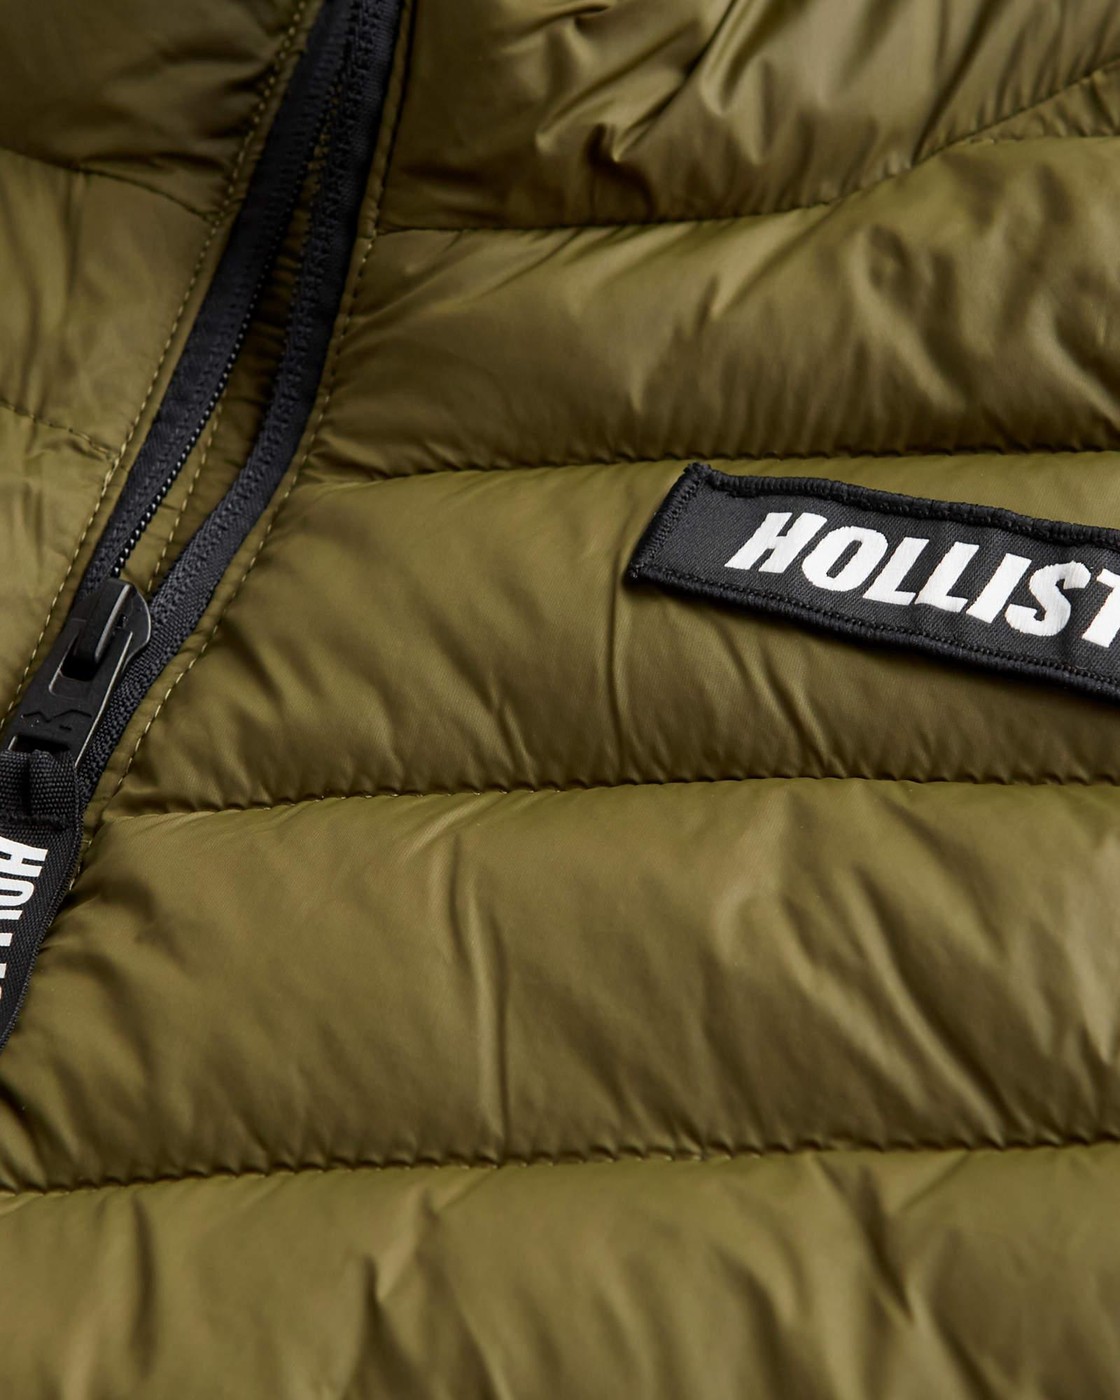 Куртка зимняя - мужская куртка Hollister, S, S